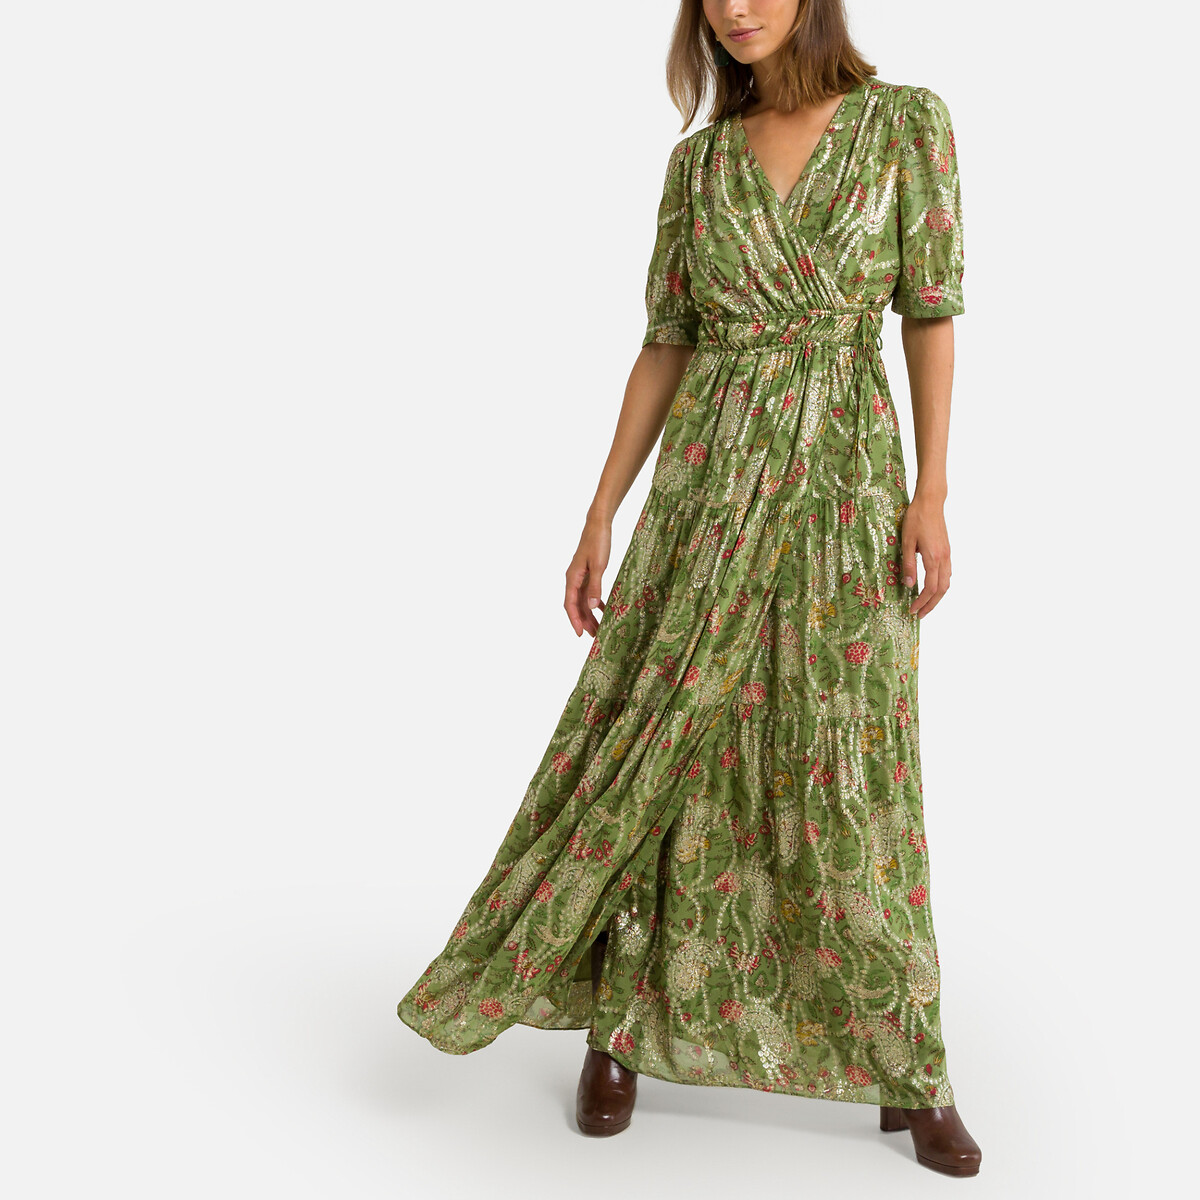 Зеленые Платья Купить В Интернет Магазине